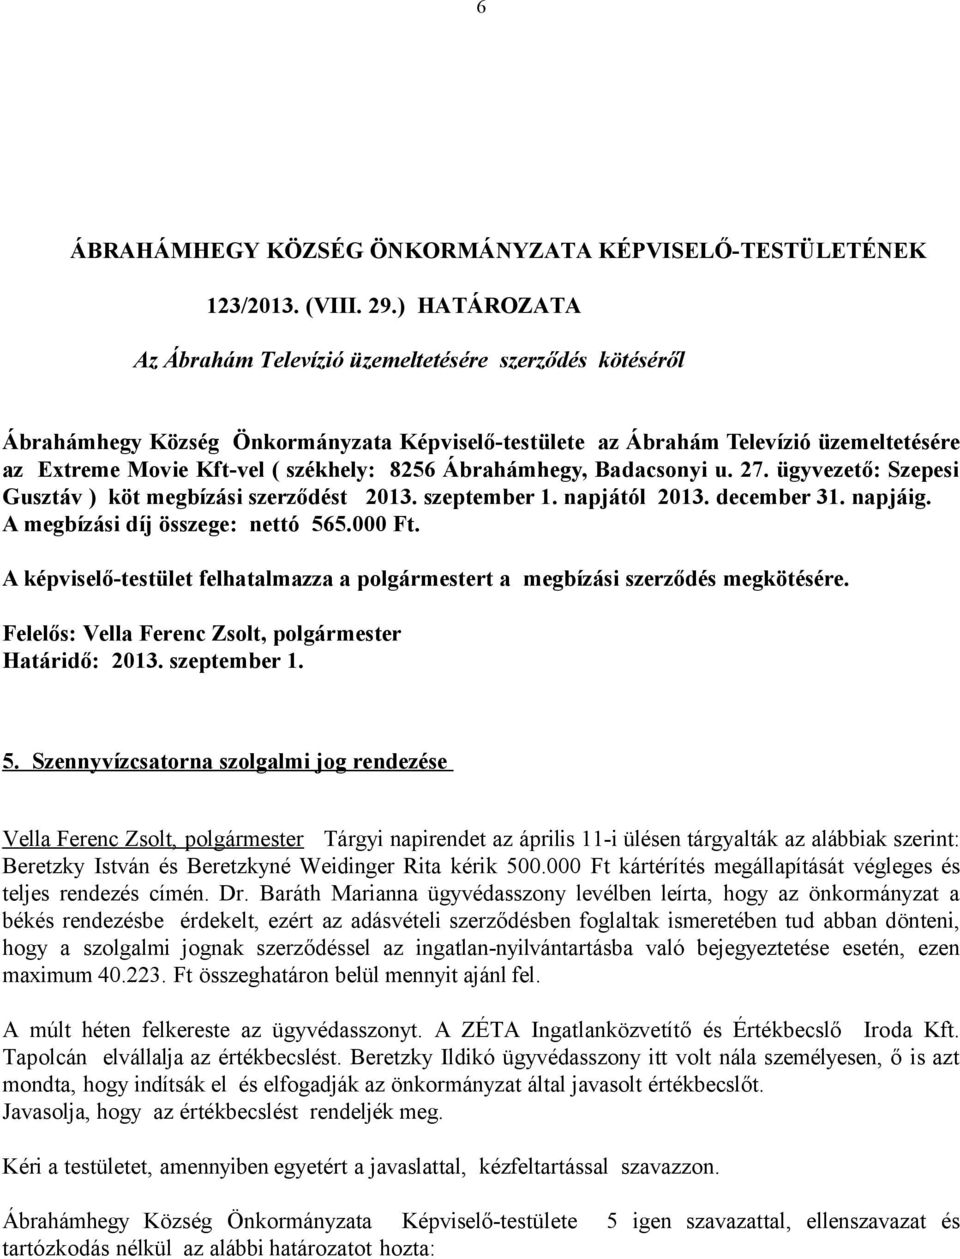 Ábrahámhegy, Badacsonyi u. 27. ügyvezető: Szepesi Gusztáv ) köt megbízási szerződést 2013. szeptember 1. napjától 2013. december 31. napjáig. A megbízási díj összege: nettó 565.000 Ft.